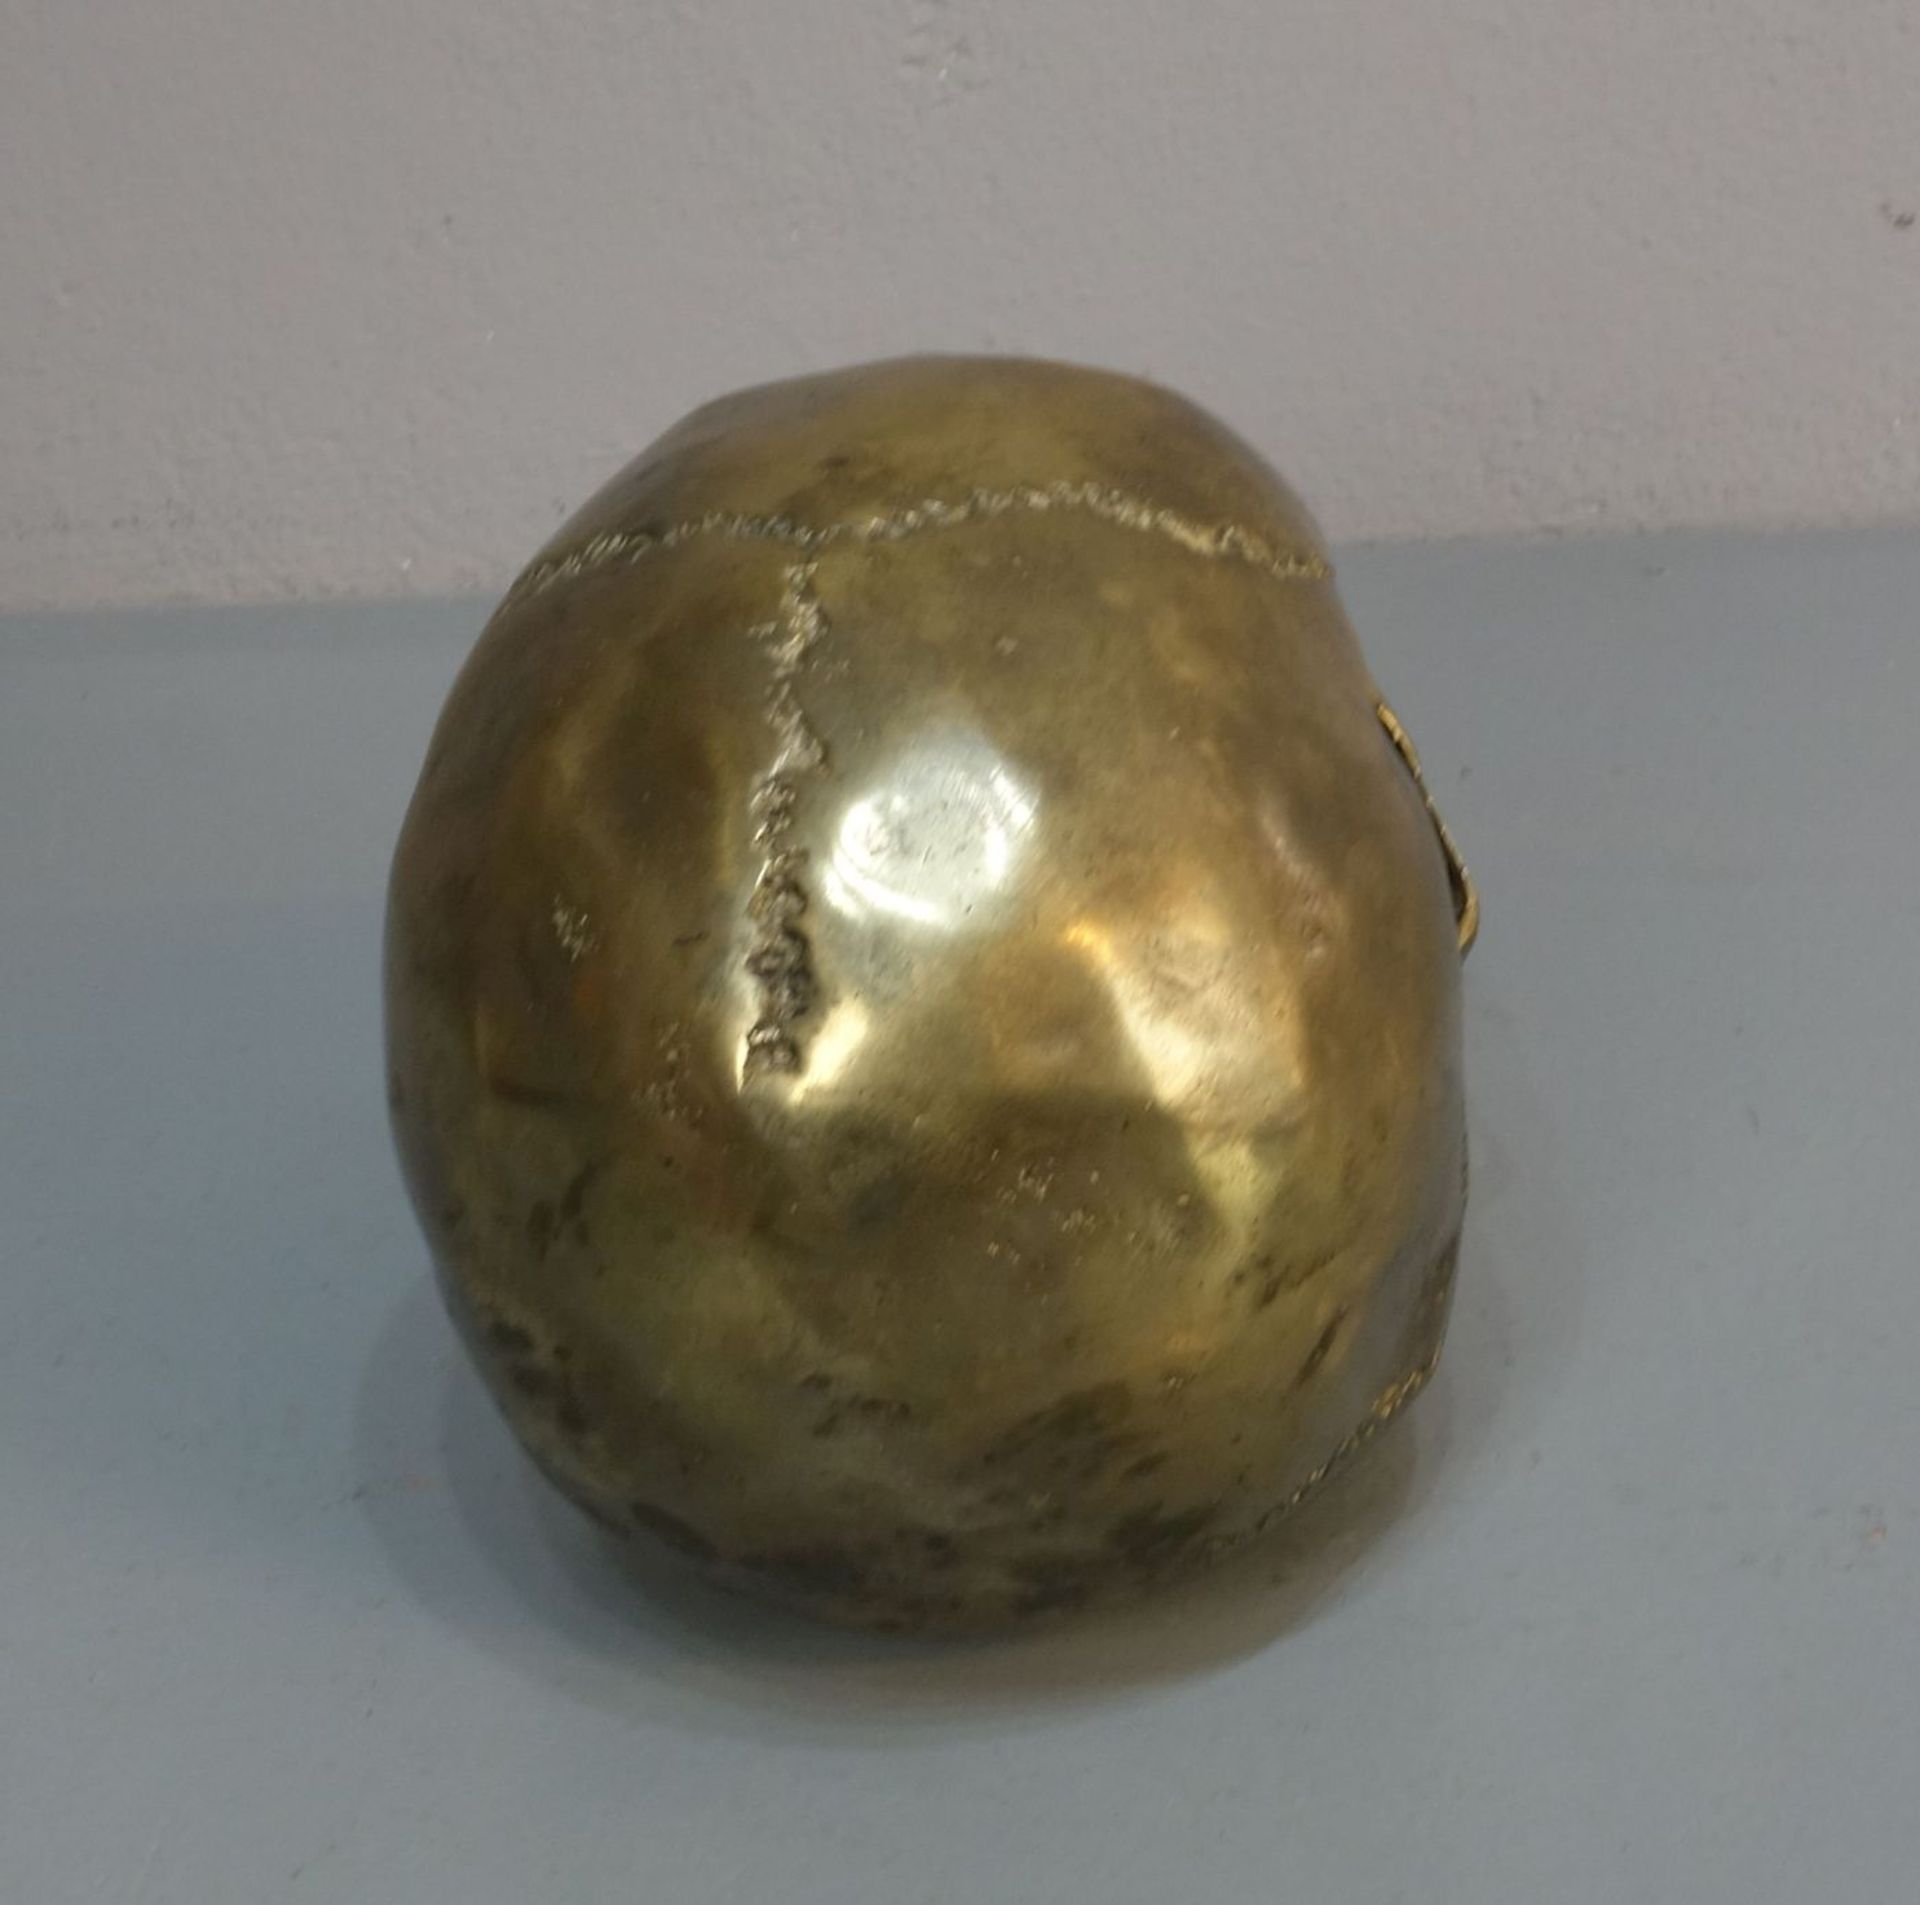 SKULPTUR / sculpture: "Schädel / Memento Mori", skull, bronziertes Metall. Vollplastisch und - Bild 3 aus 4